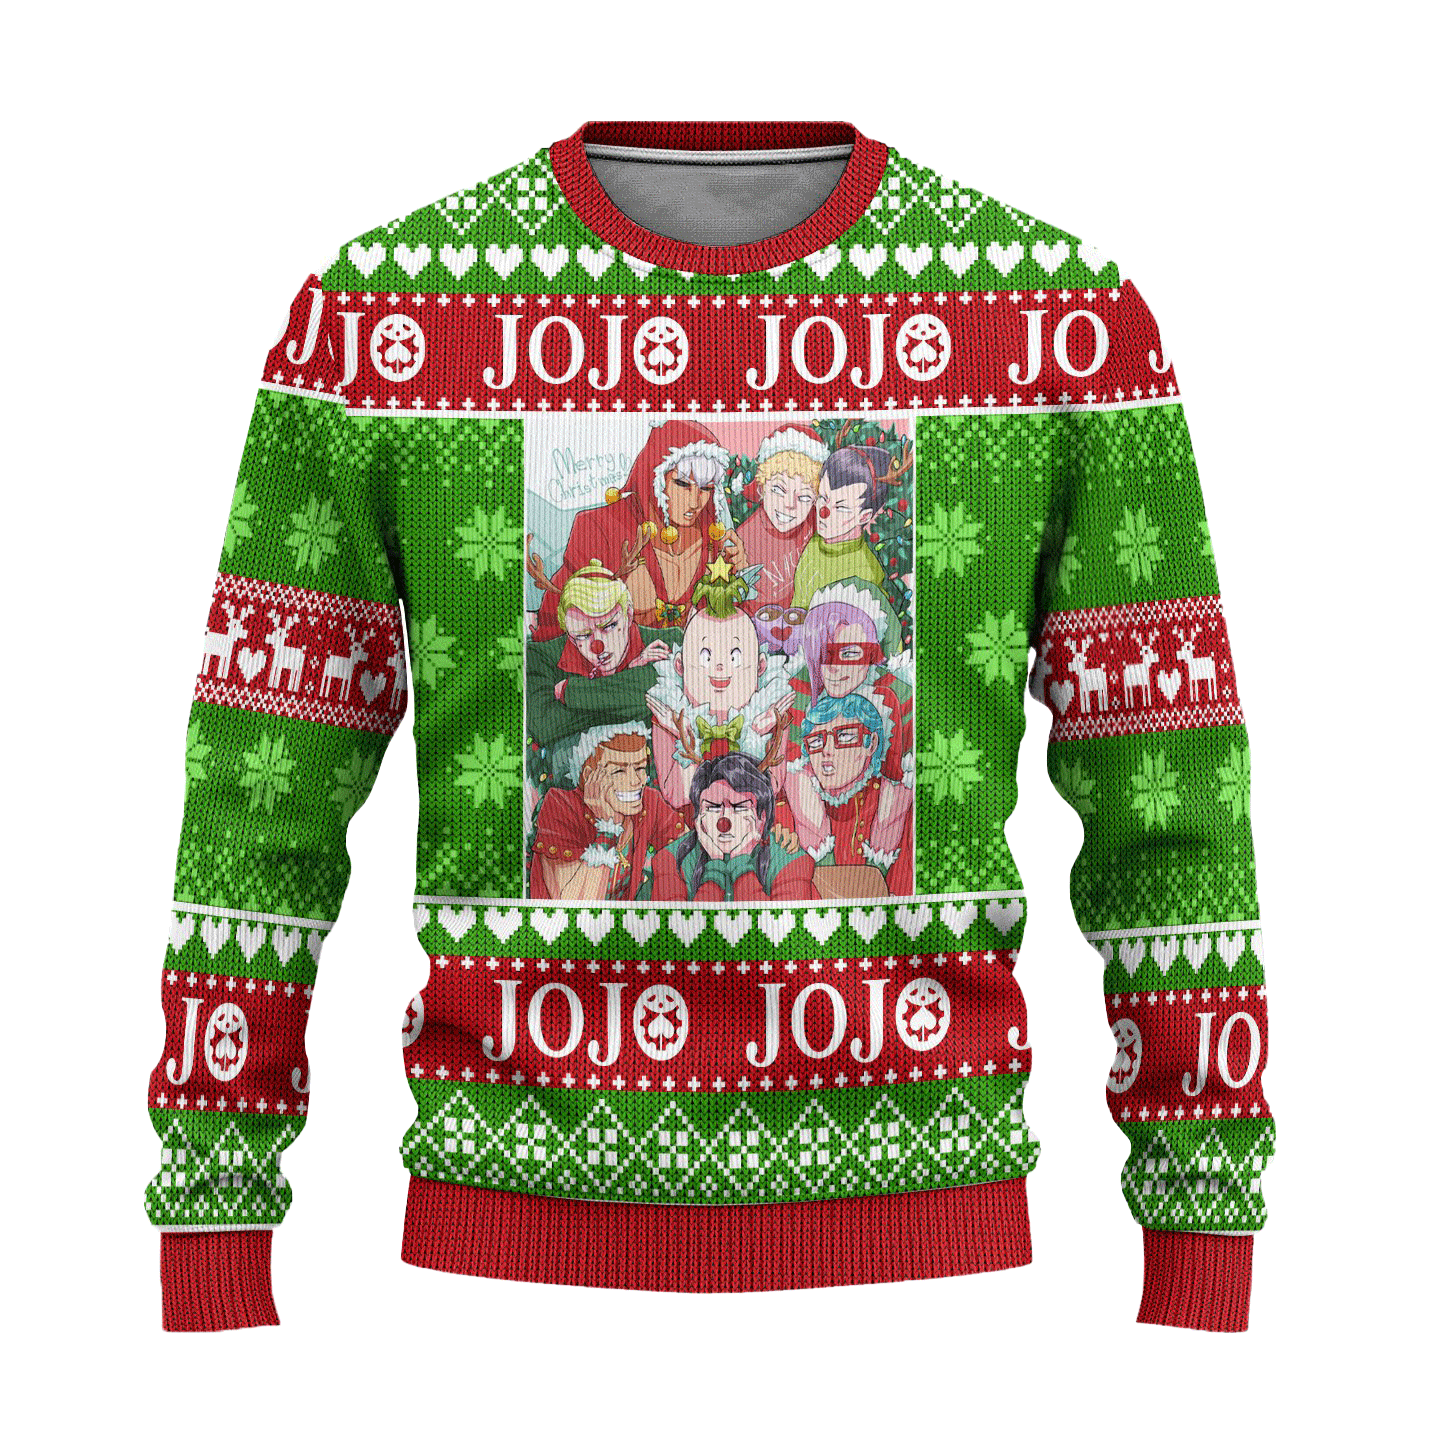 JoJos Bizarre Adventure Anime Ugly Christmas Sweater Custom Xmas Gift